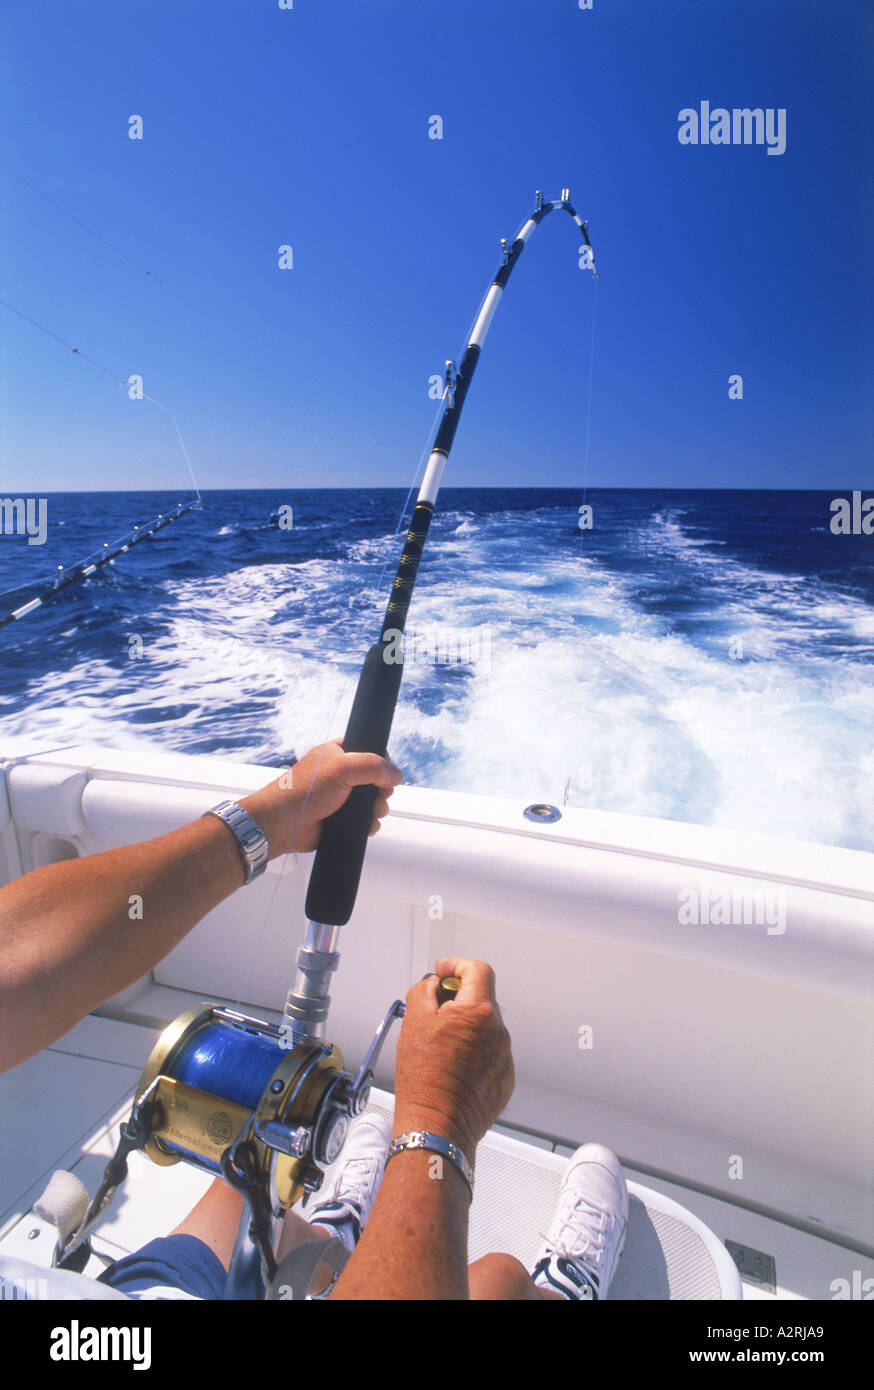 Pesca in mare immagini e fotografie stock ad alta risoluzione - Alamy